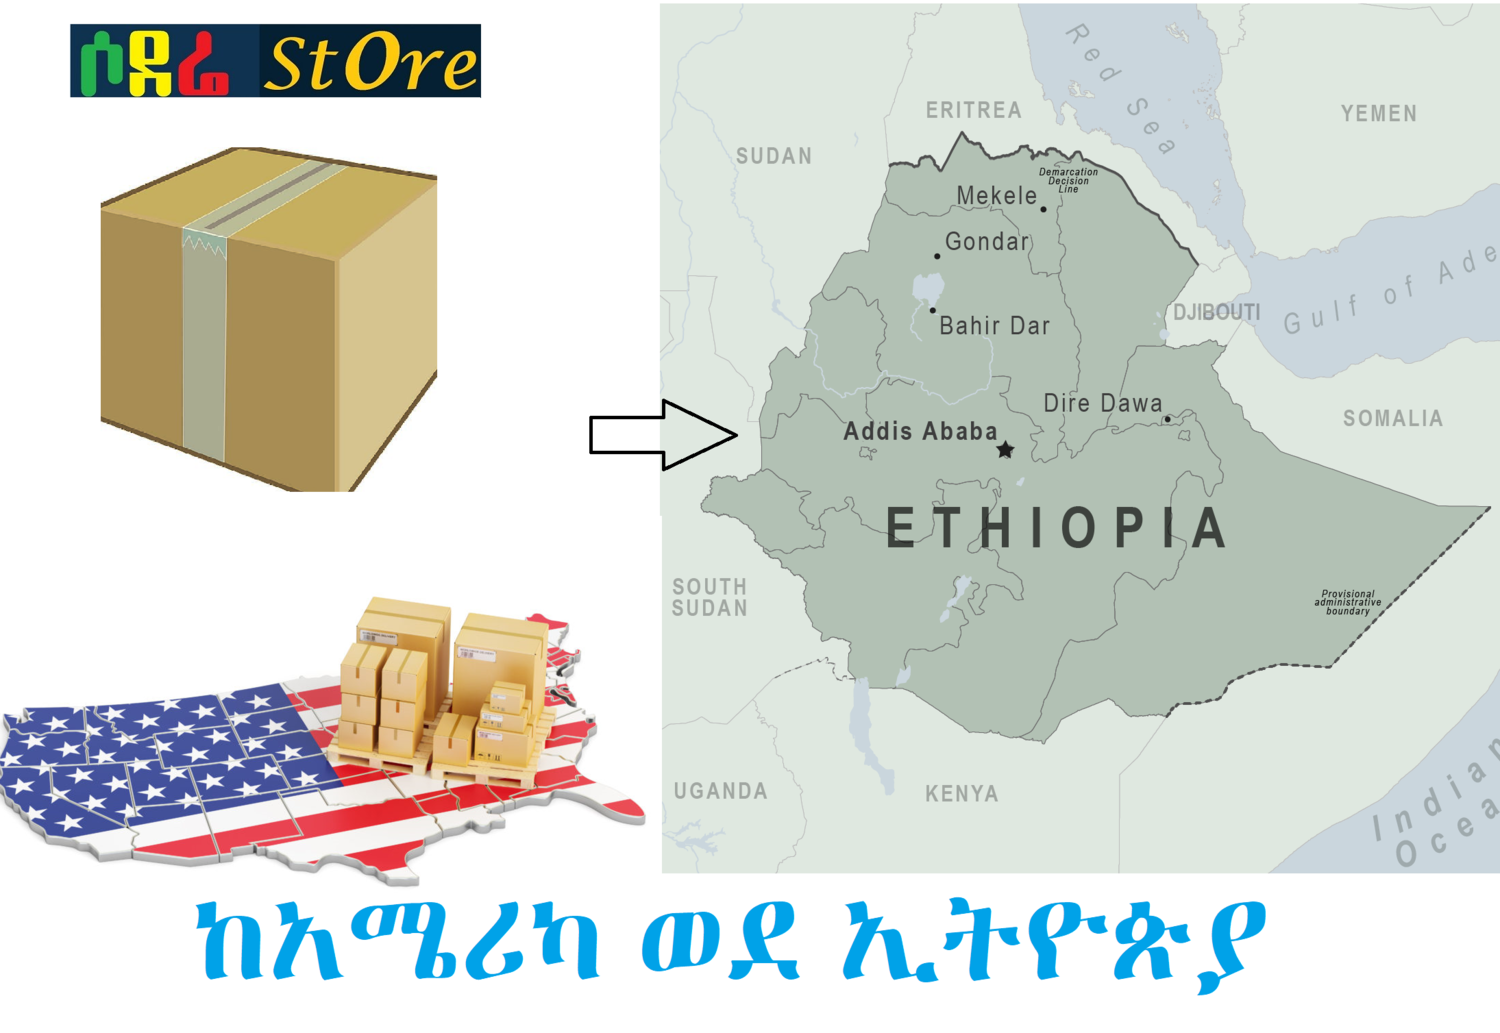 ከአሜሪካ ወደ ኢትዮጵያ የመላክ አገልግሎት Shipping service from USA to Ethiopia 6 to 10 days - ship